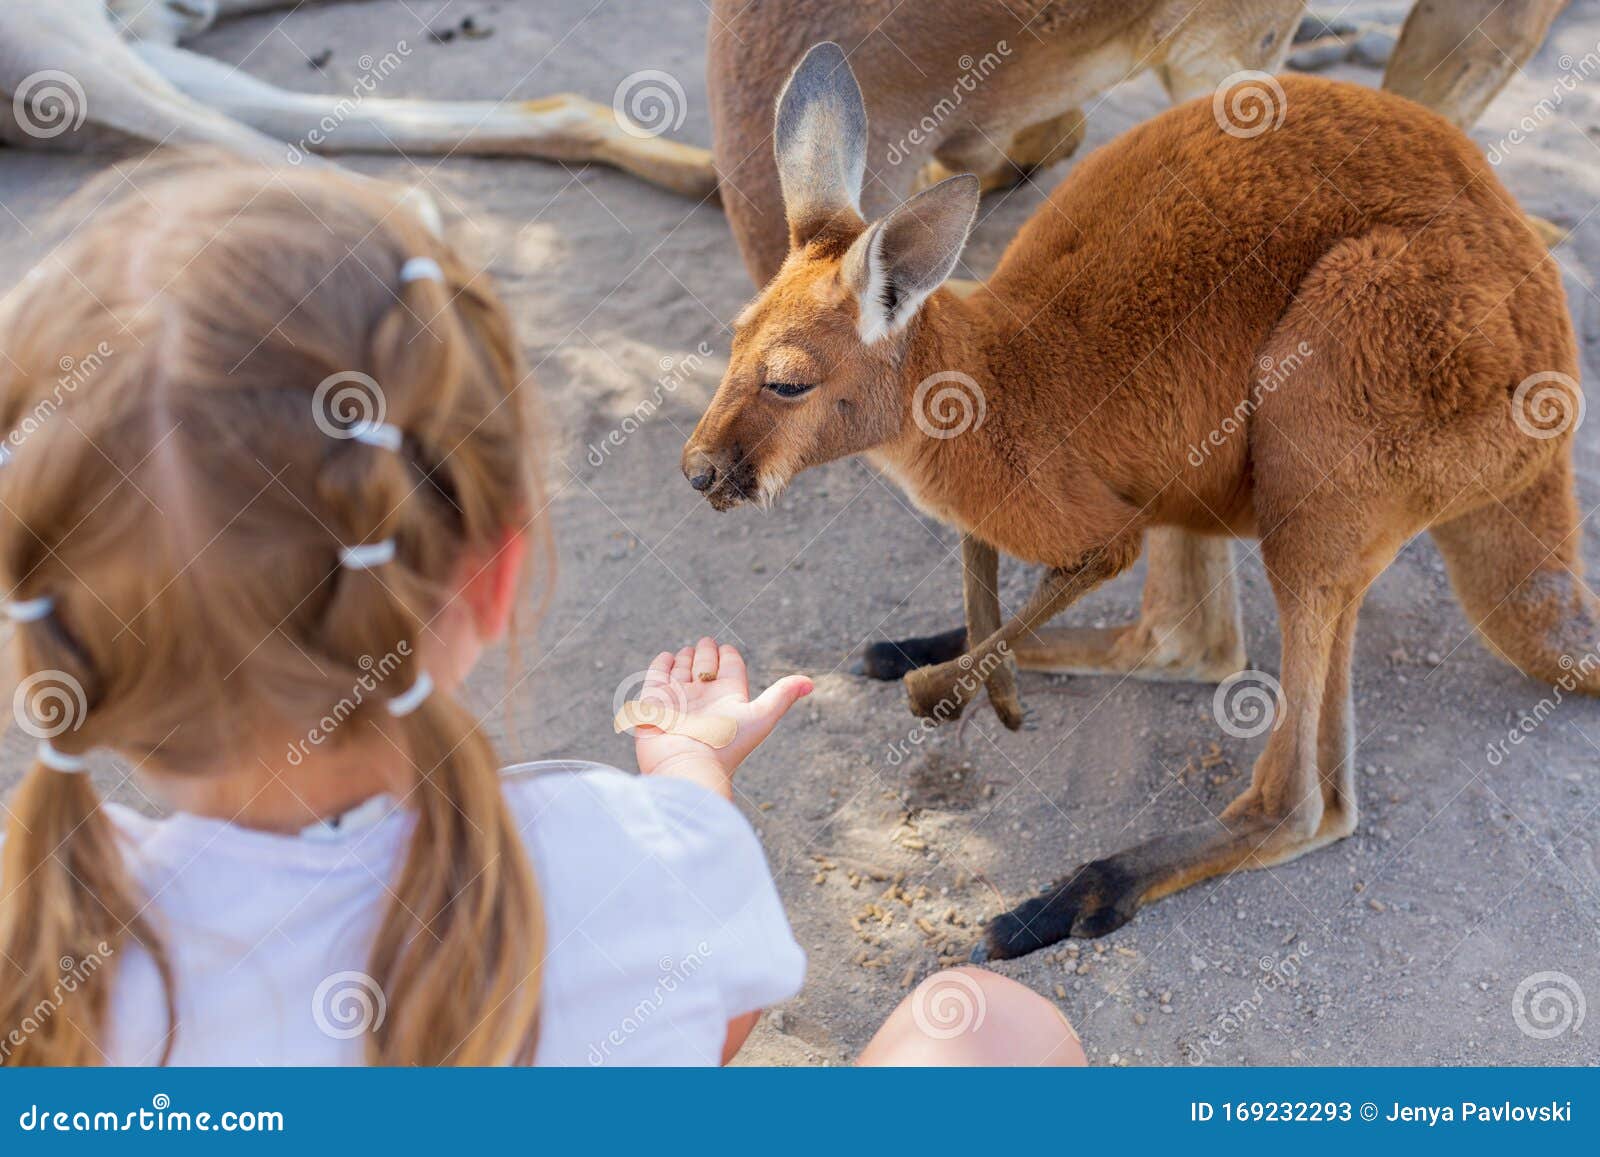 Little girl caring for an Australian kangaroo feeding Australian animals.